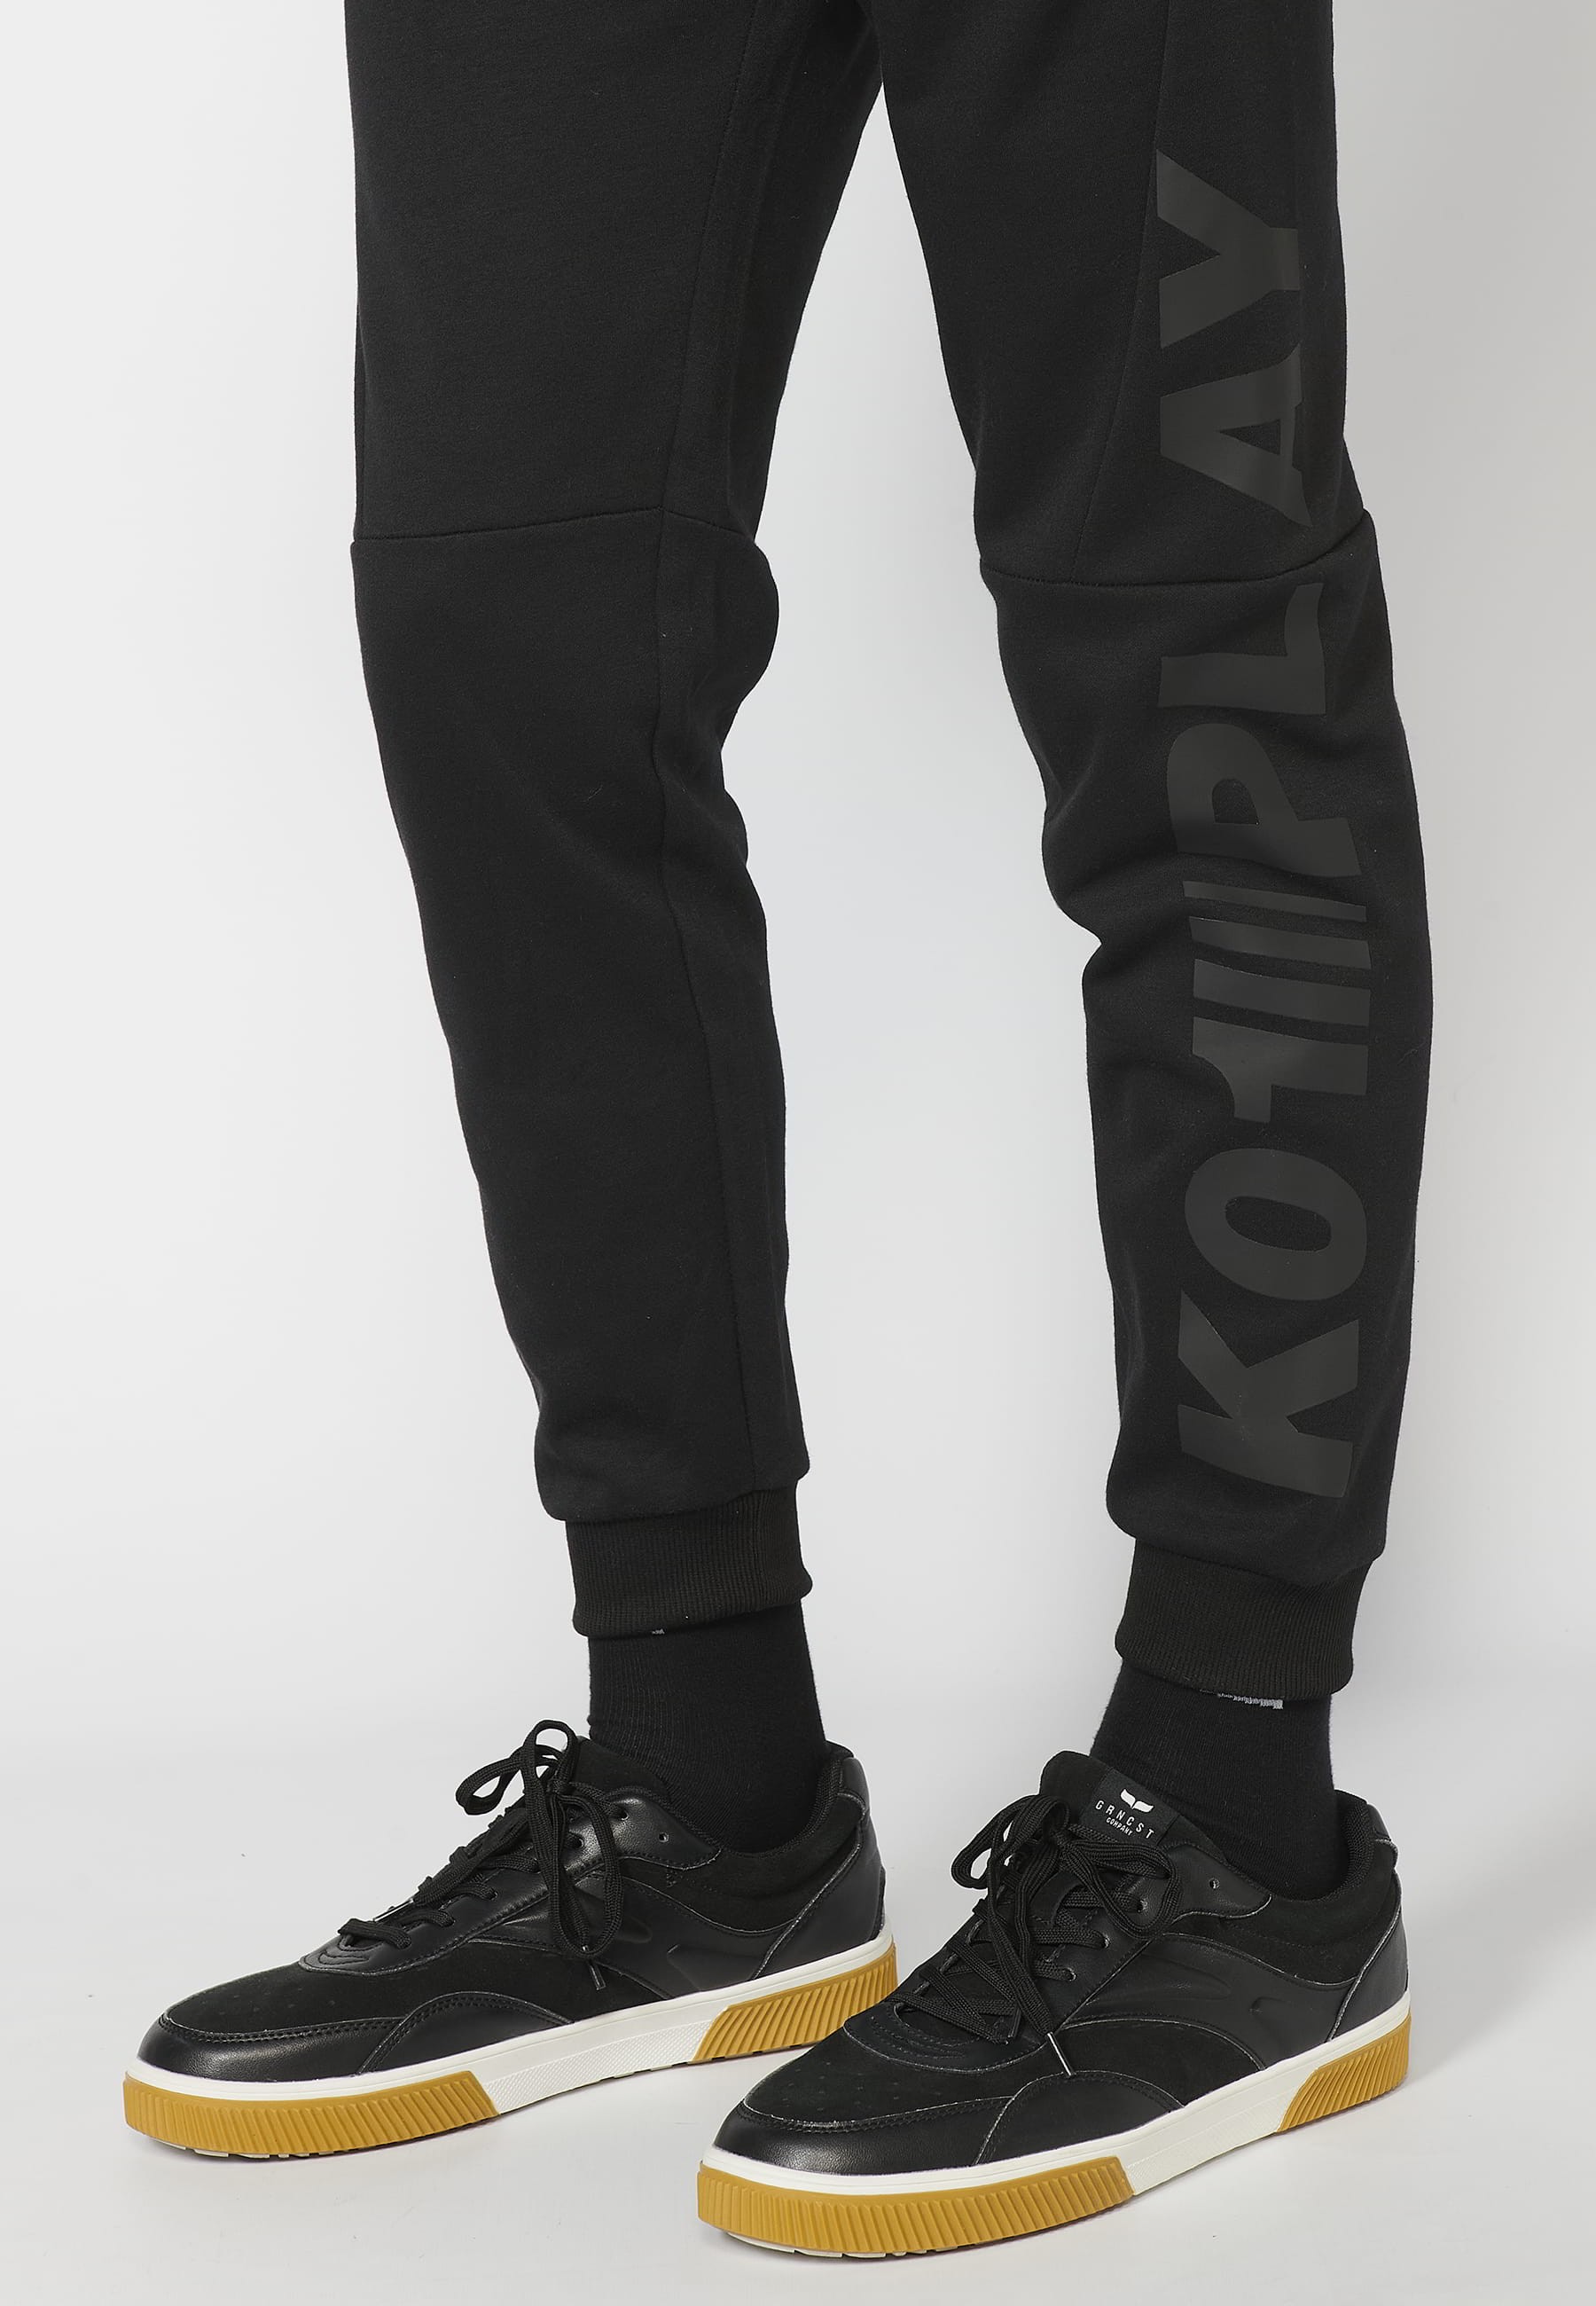 Pantalon de jogging long avec taille élastique réglable, détail de poche, couleur Noir pour Homme